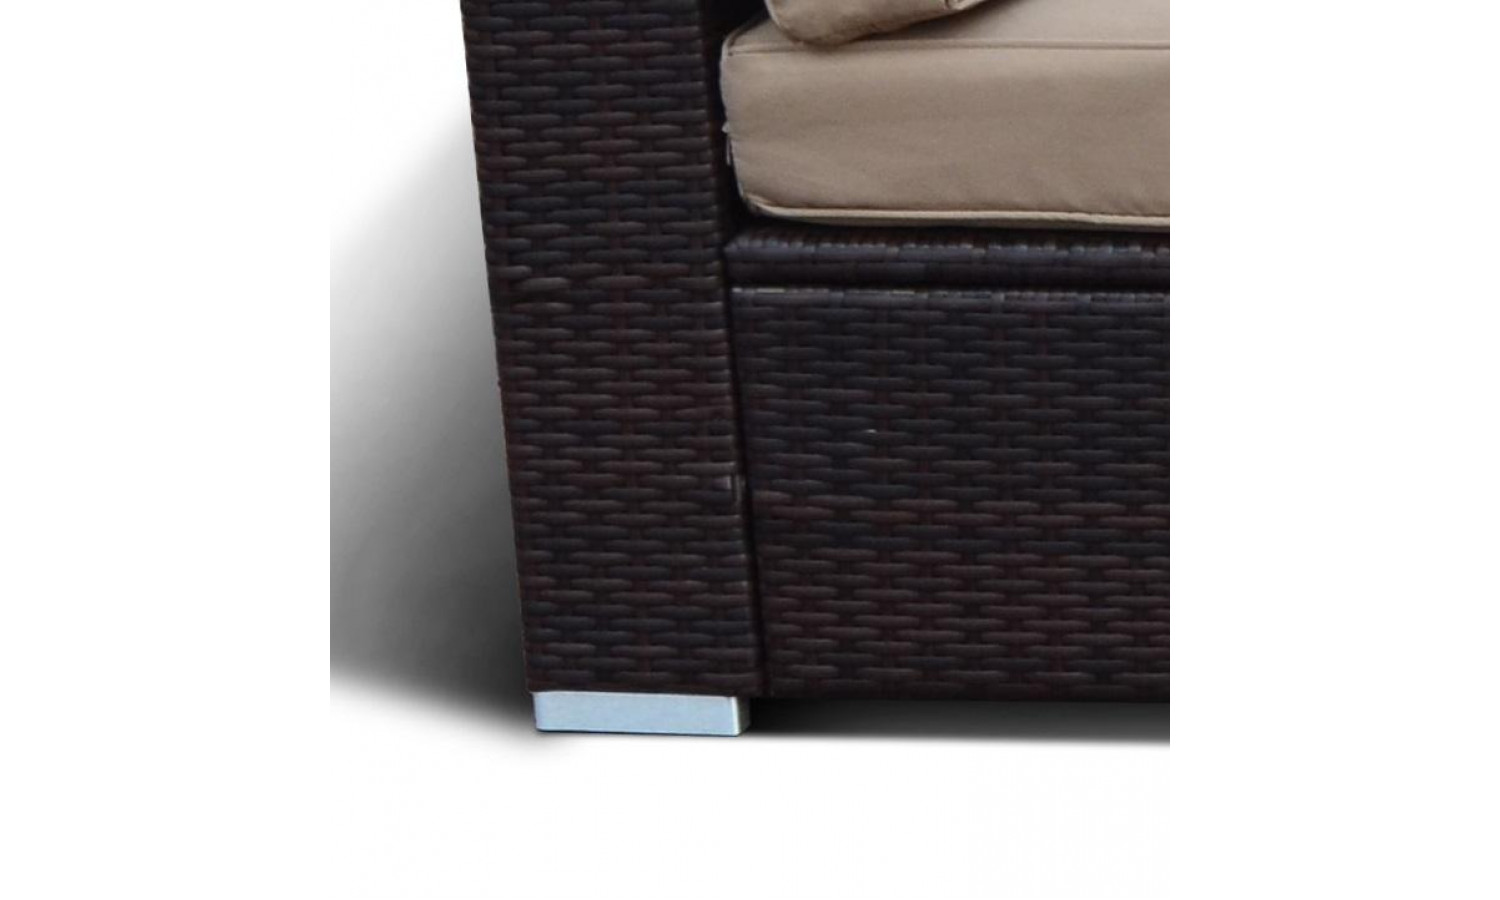 Плетеный комплект мебели YR822BB-Brown/Brown